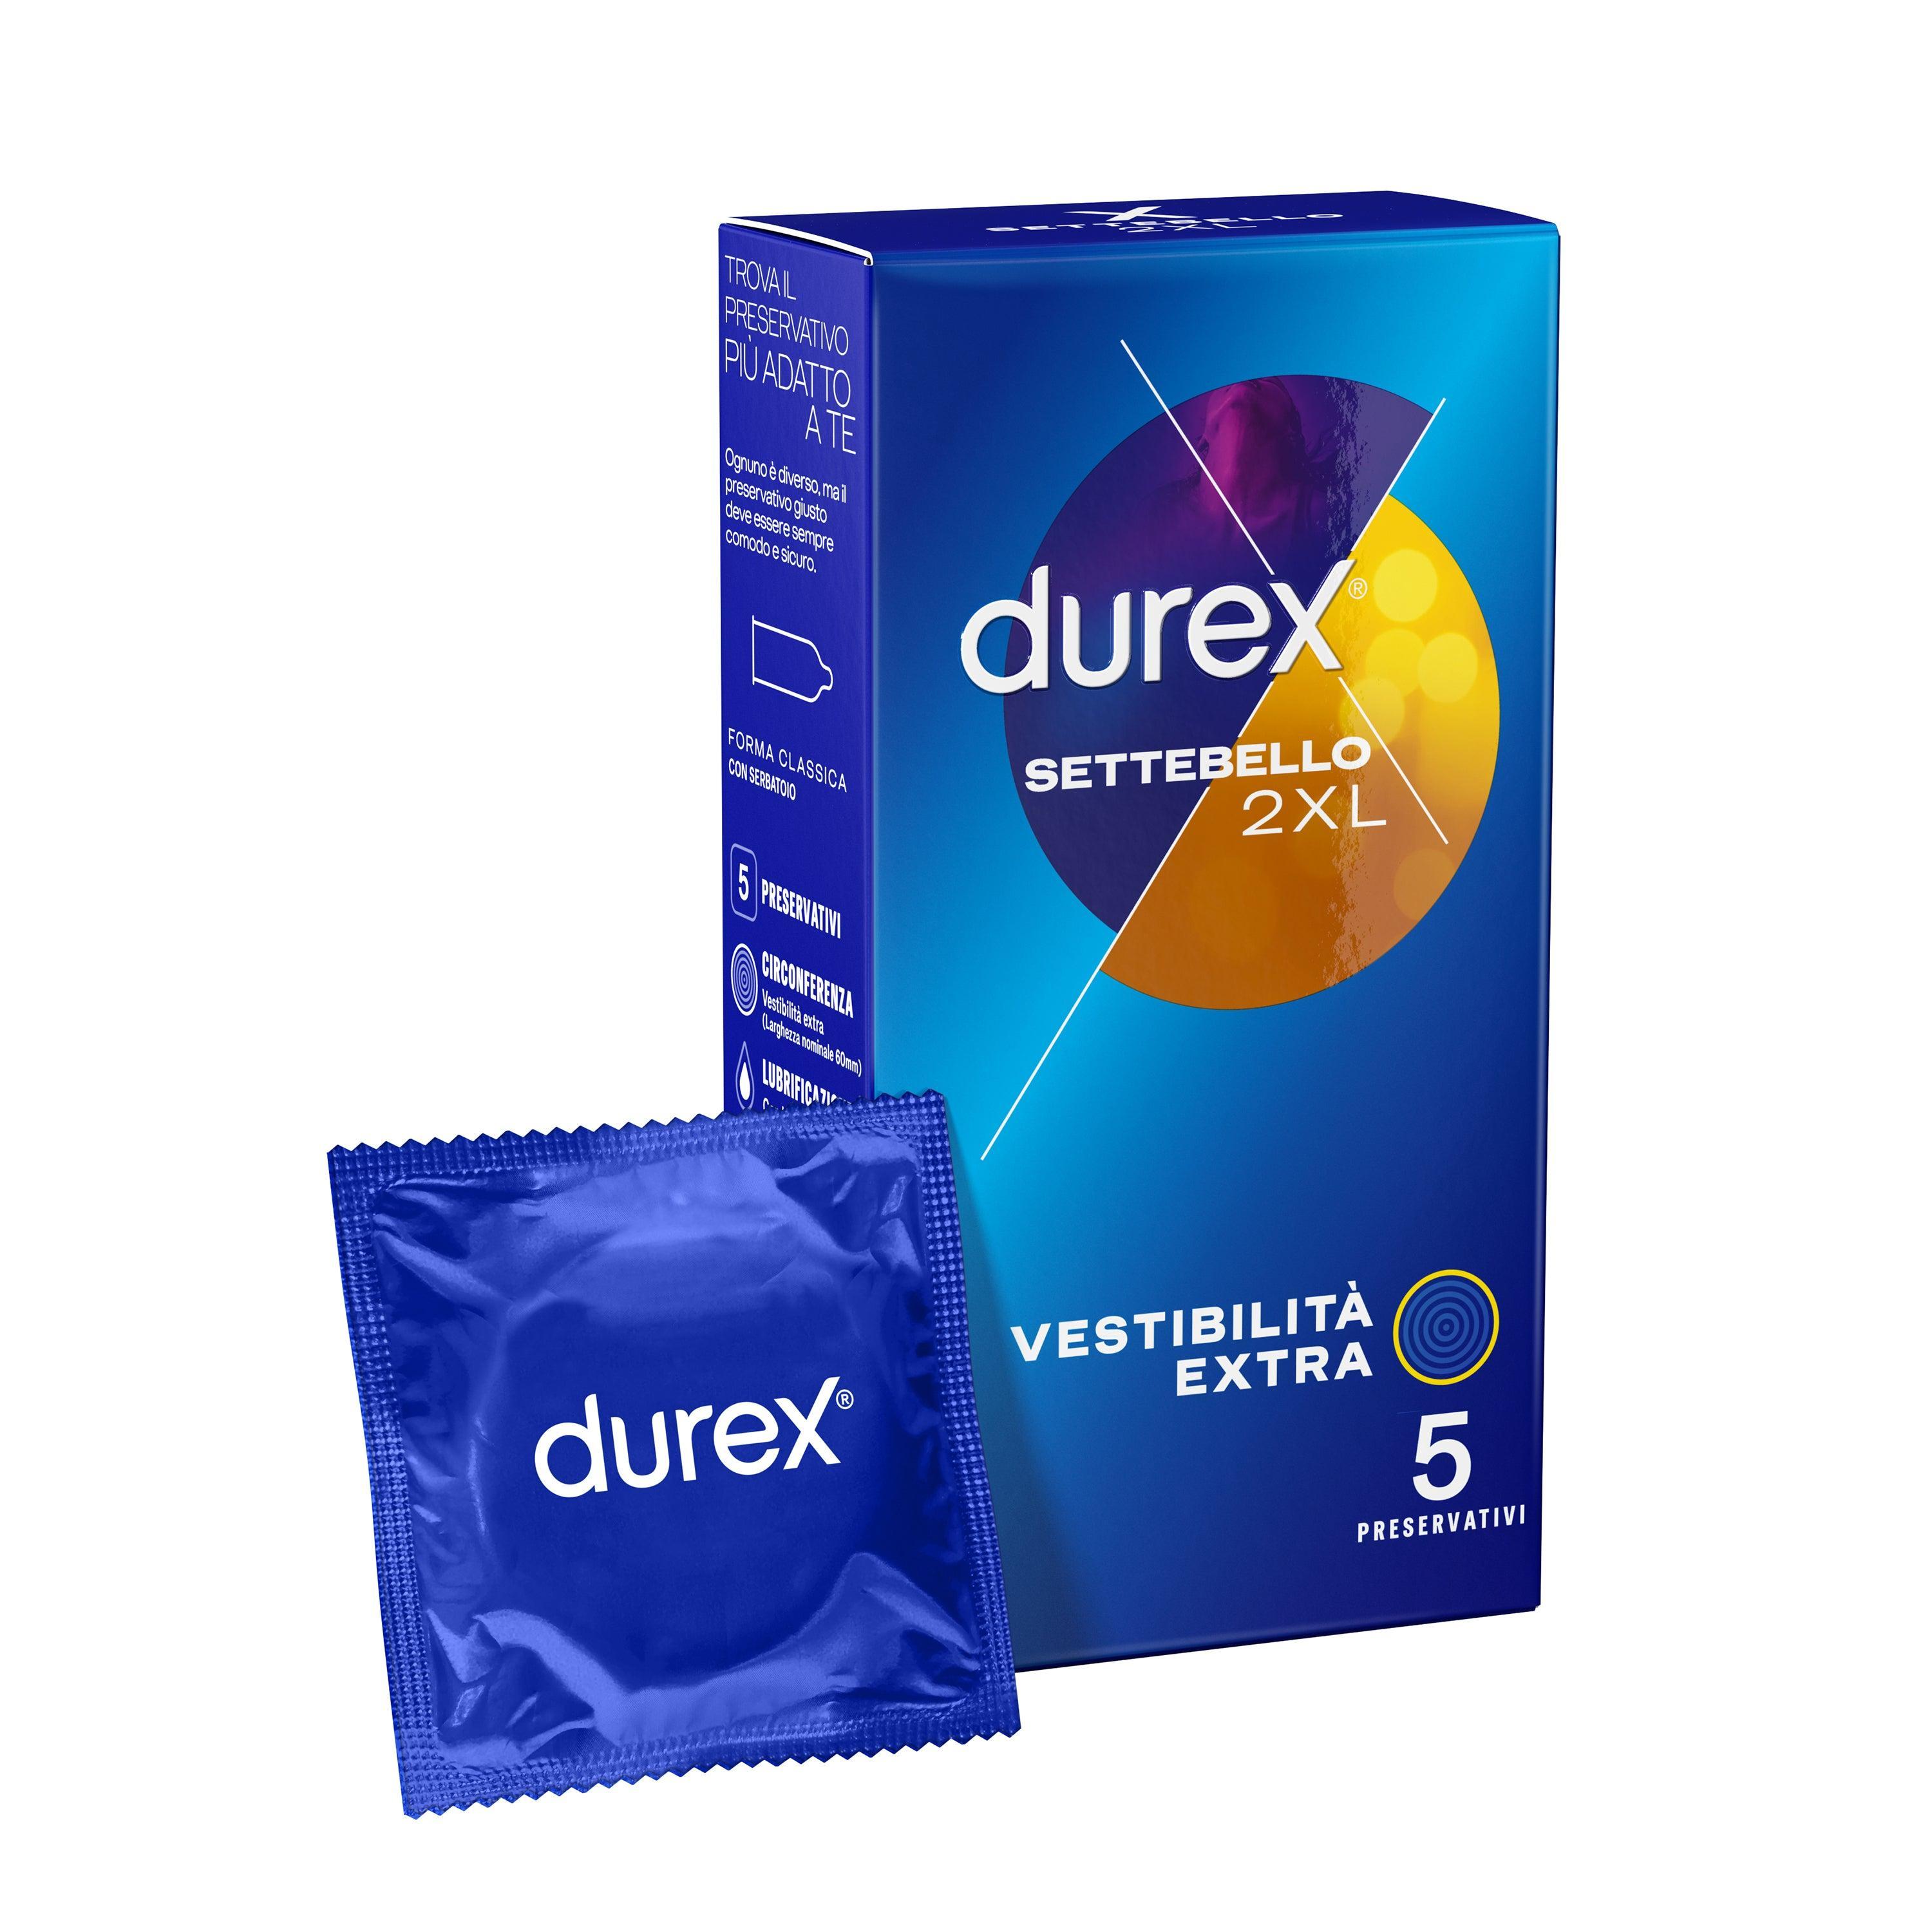 Preservativi Durex settebello 2XL confezione da 5